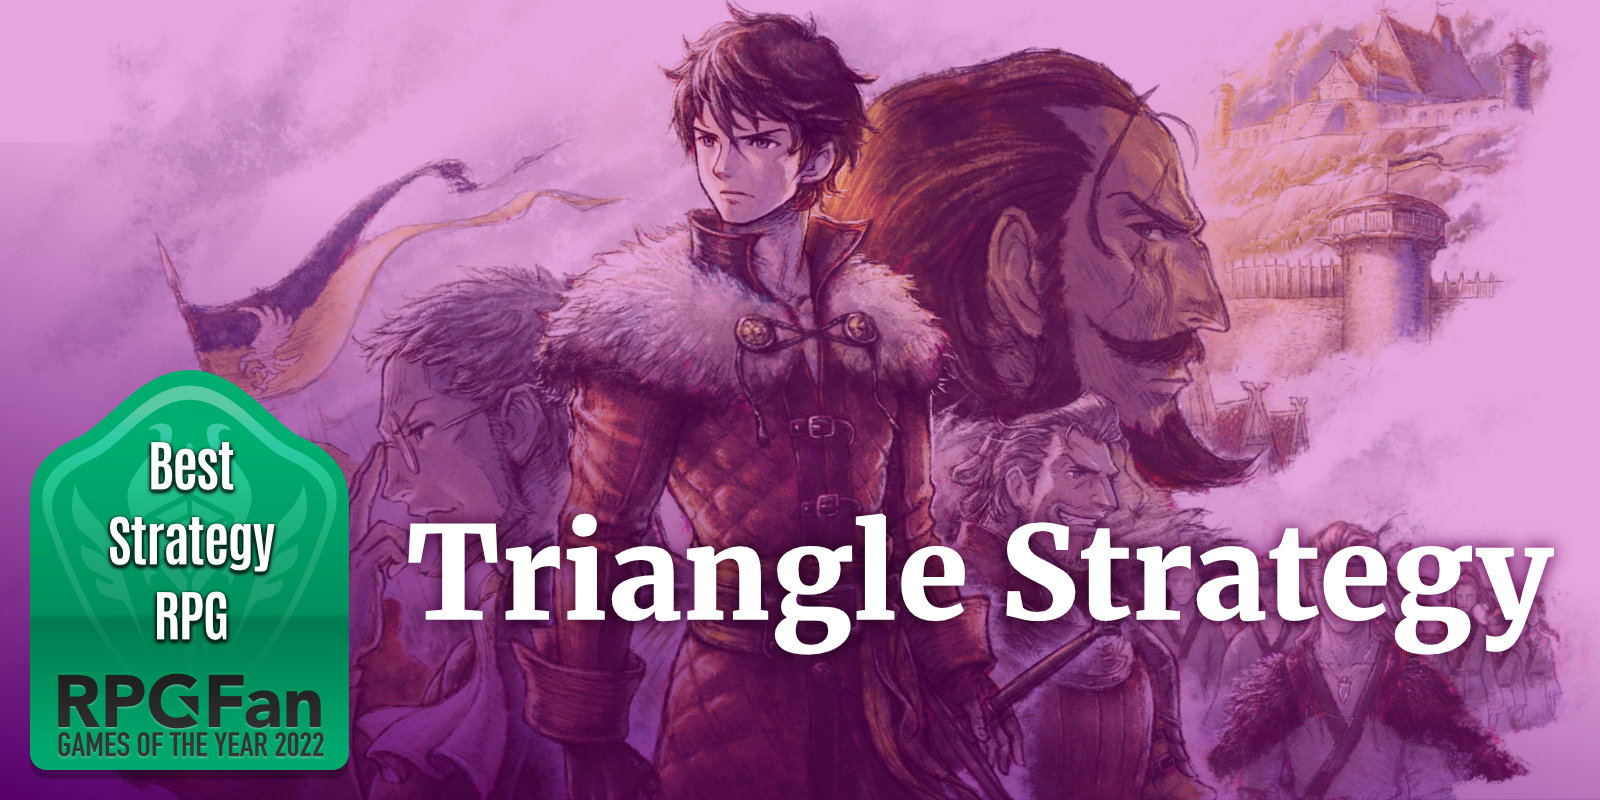 GOTY 2022 Best Strategy RPG Triangle Strategy